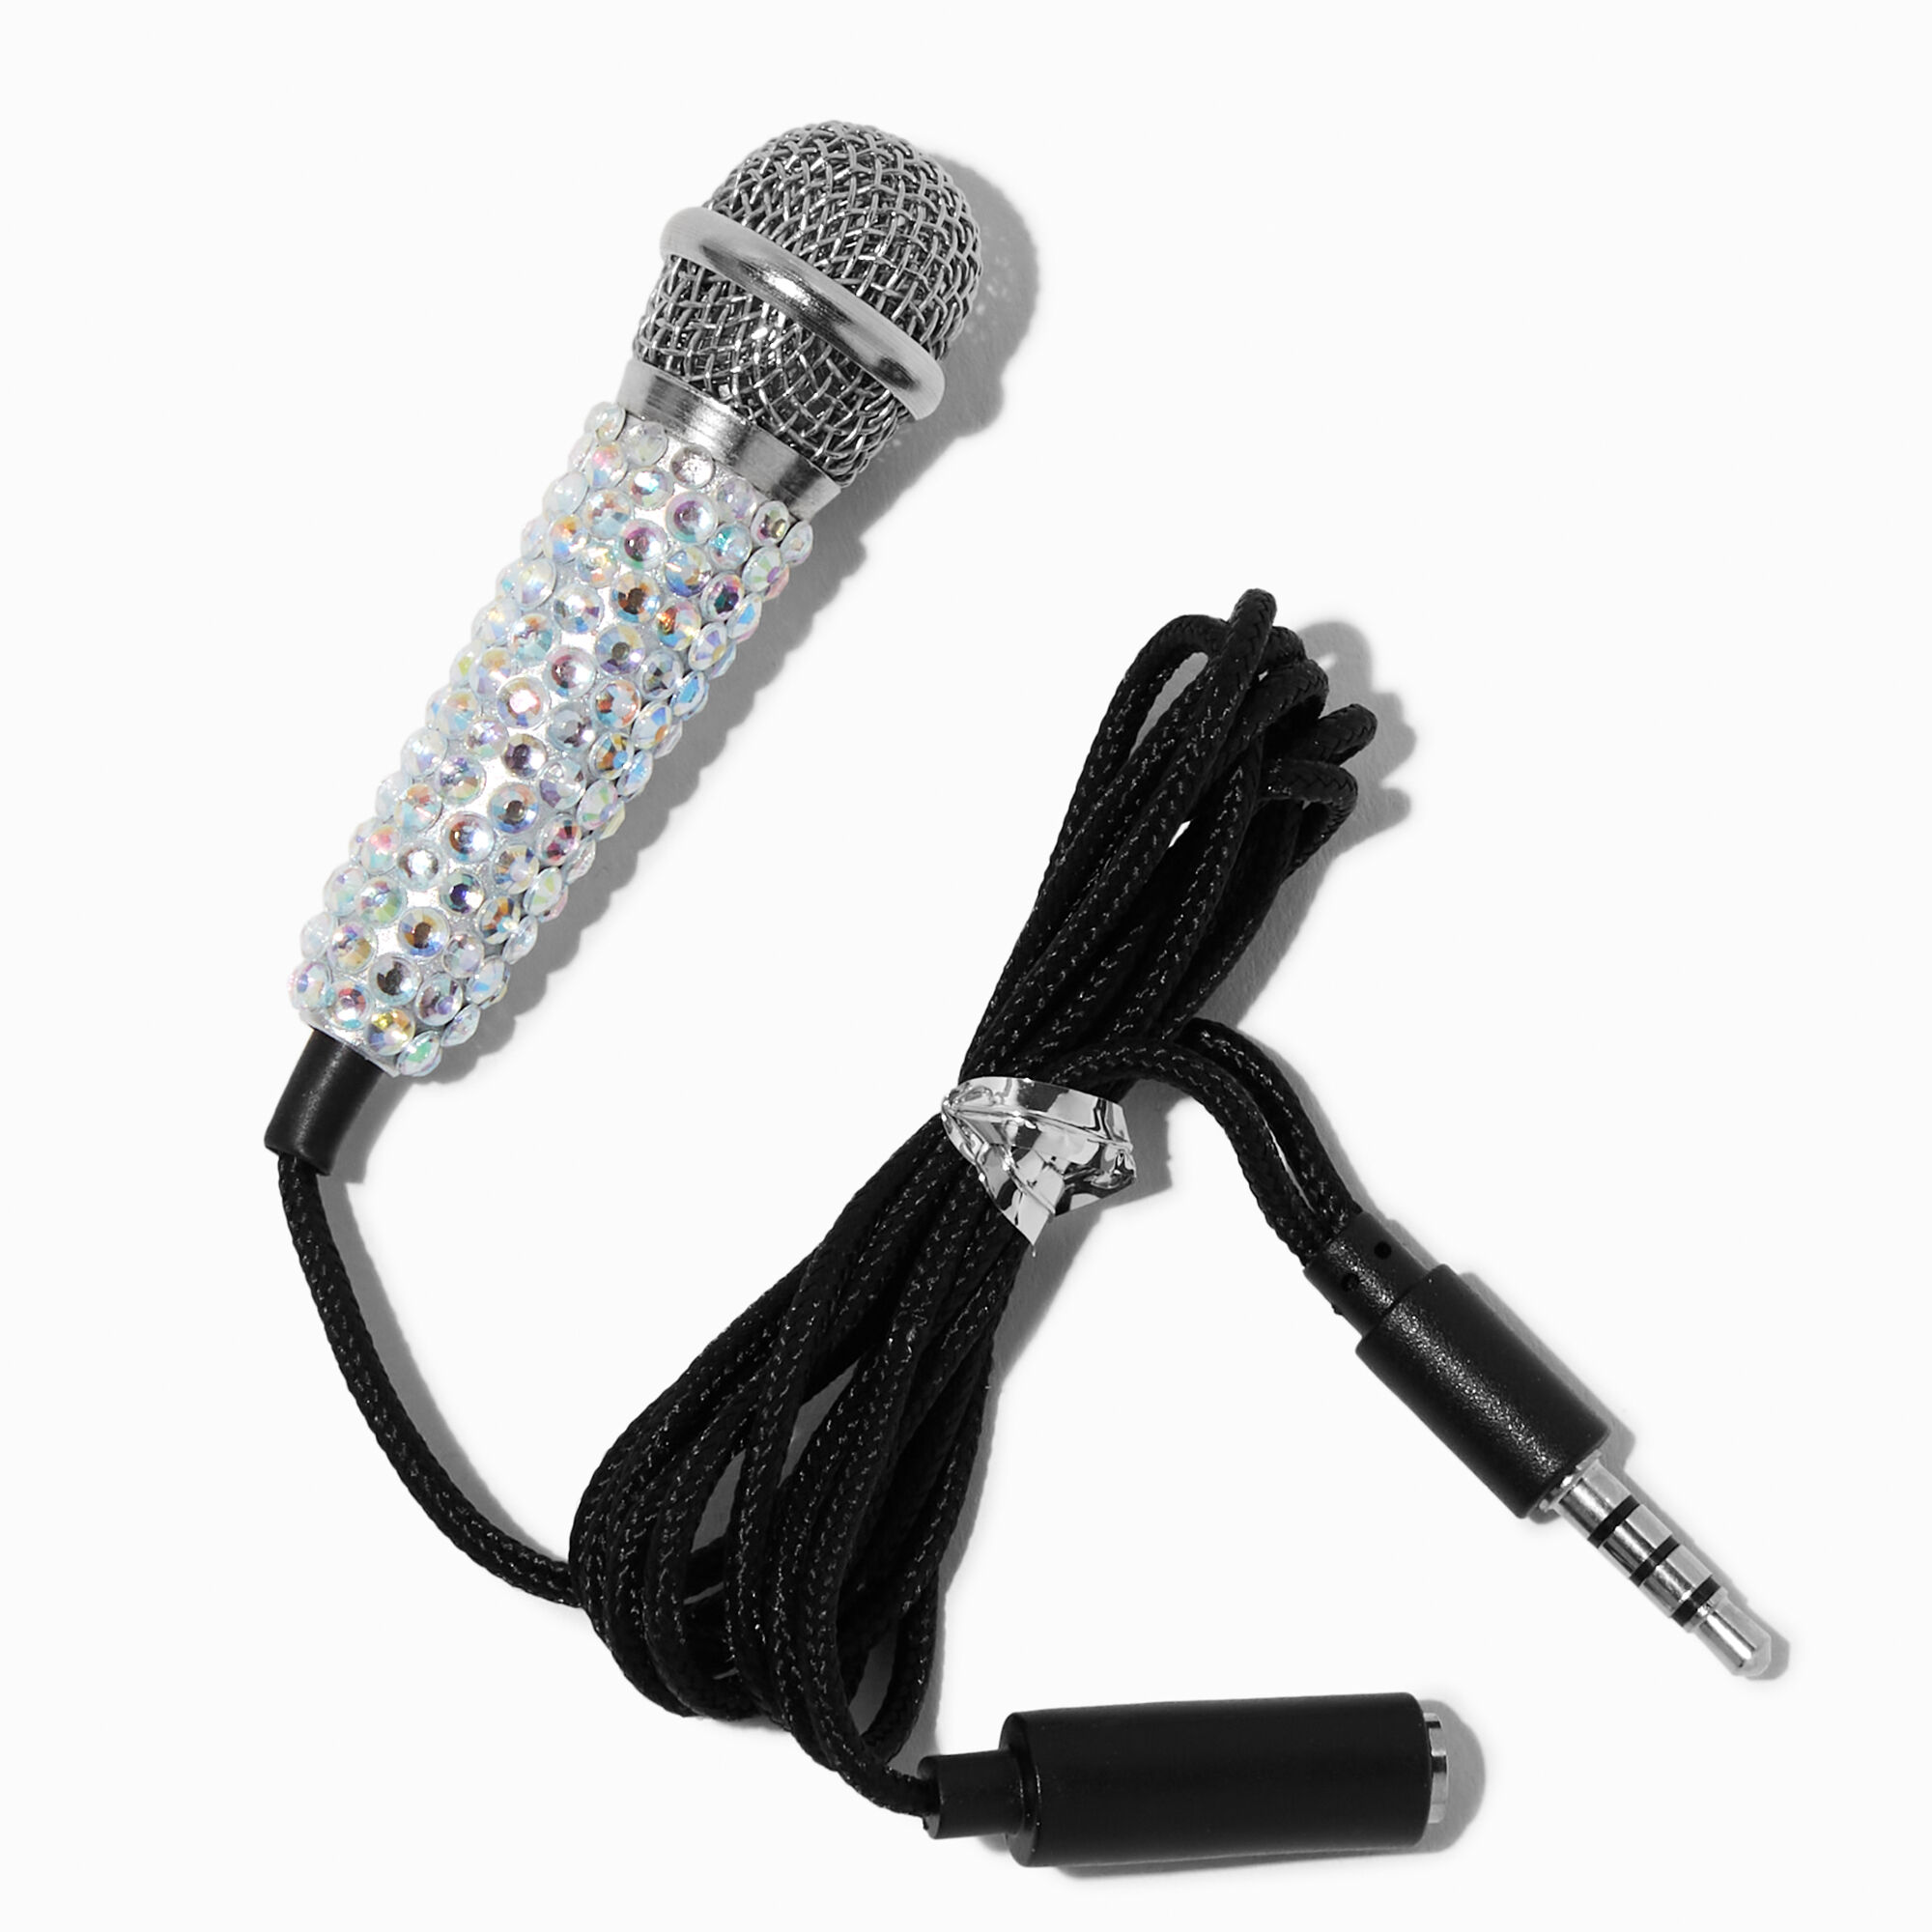 Mini Microphones